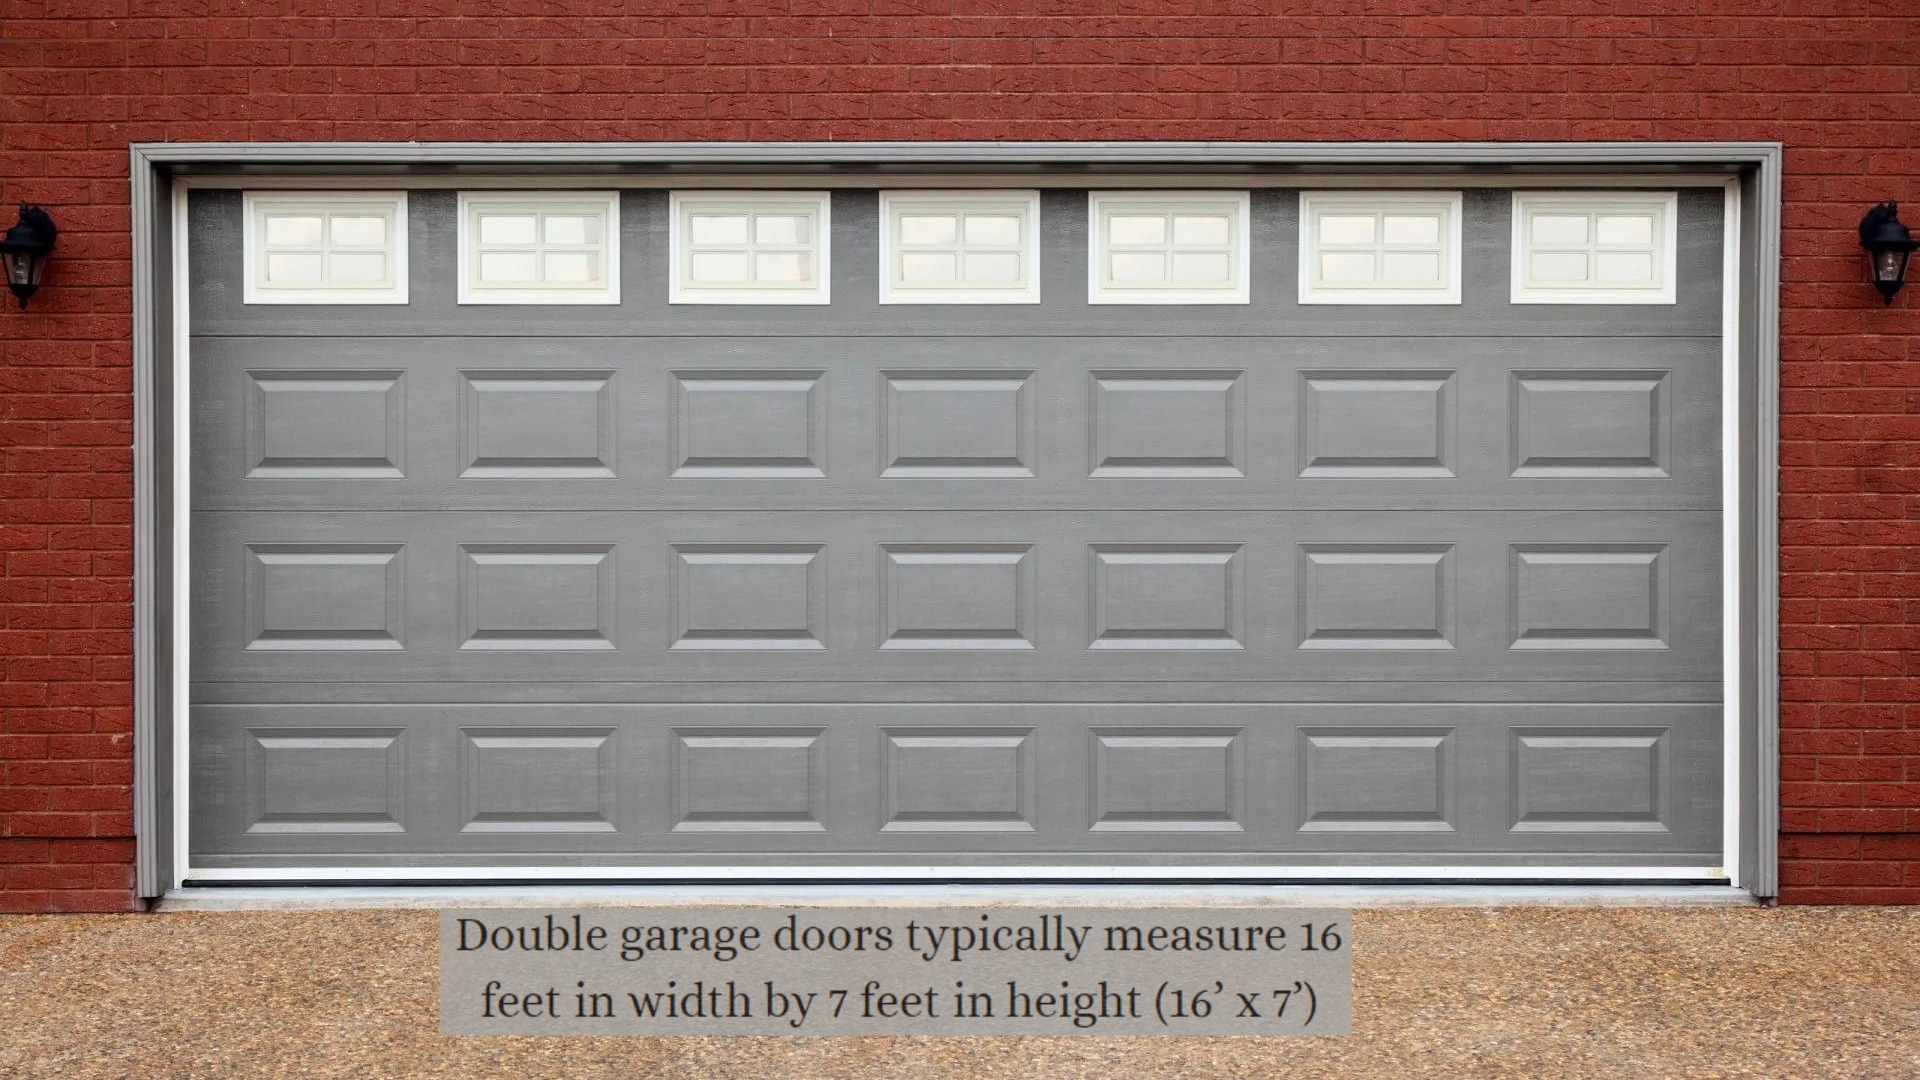 A standard double garage door